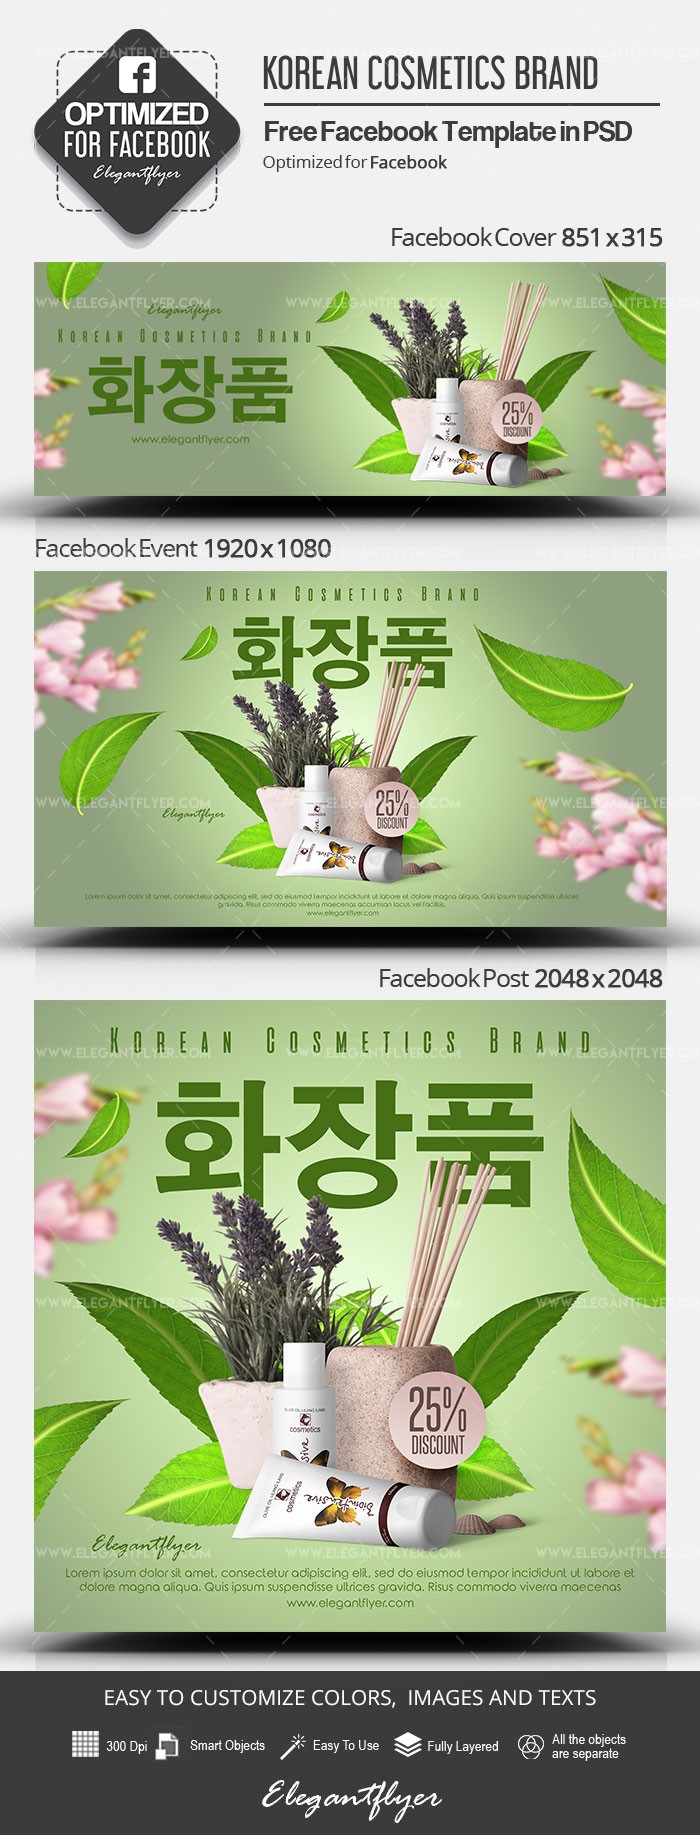 Marchio coreano di cosmetici su Facebook. by ElegantFlyer